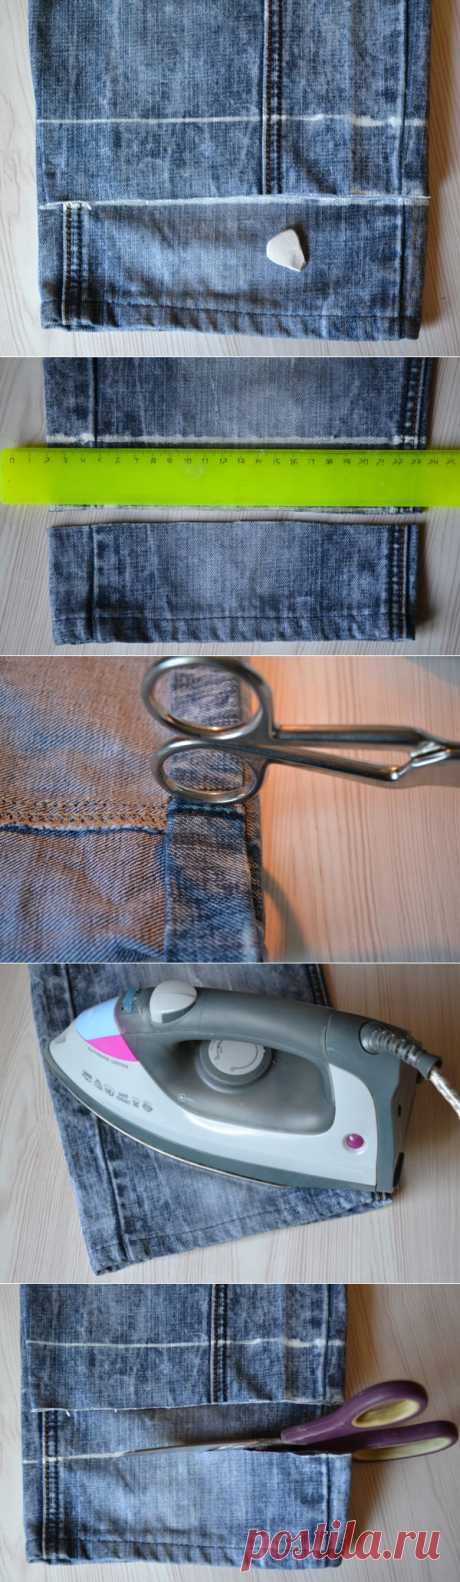 Как обрезать и подшить джинсы (Шитье и крой) – Журнал Вдохновение Рукодельницы